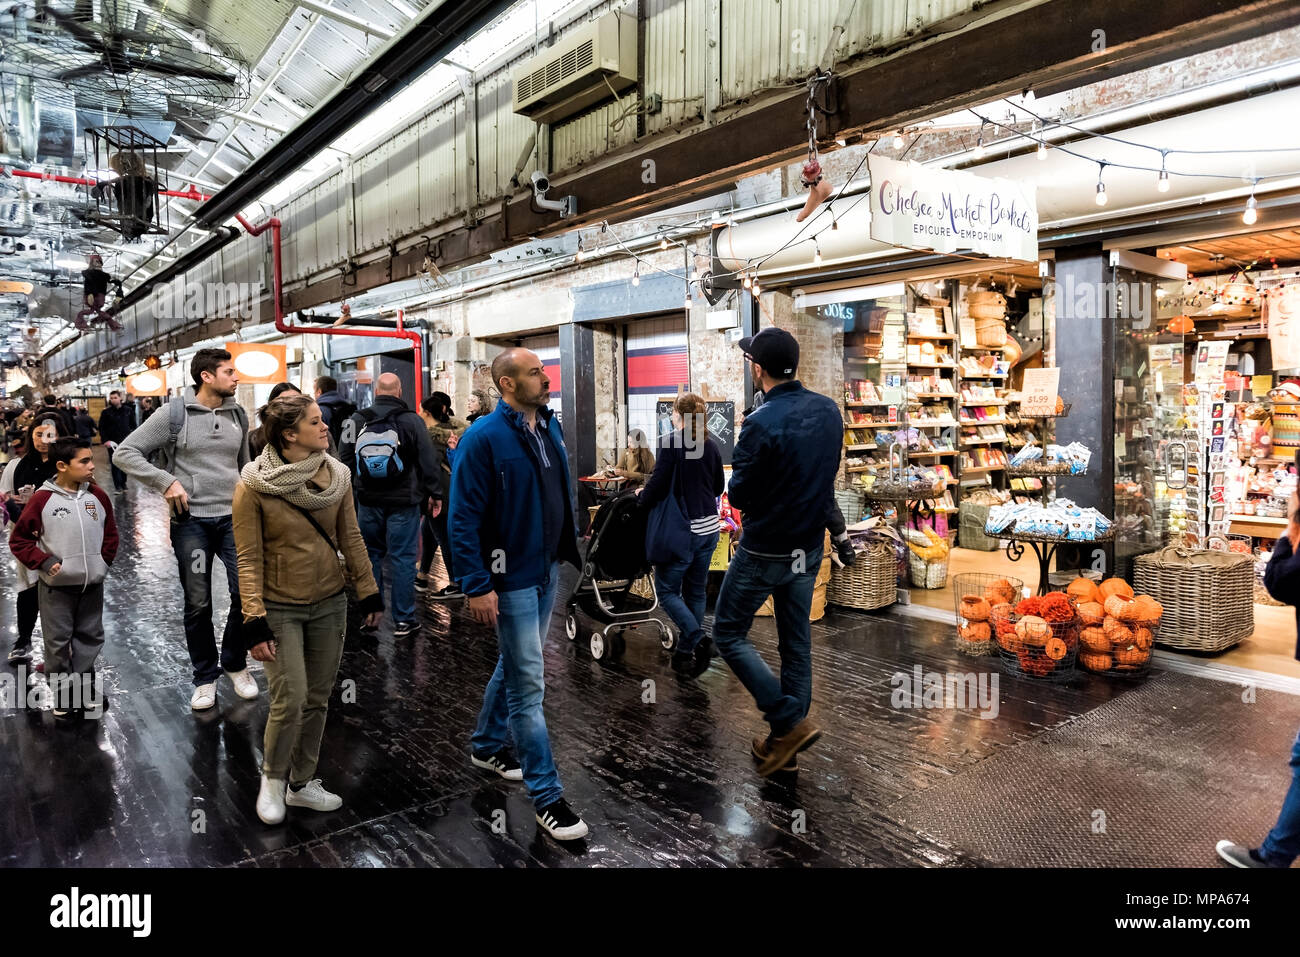 La ville de New York, USA - 30 octobre 2017 : l'alimentation du marché intérieur à l'intérieur d'Epicure boutique emporium quartier de Chelsea à Manhattan, New York district gens walkin Banque D'Images